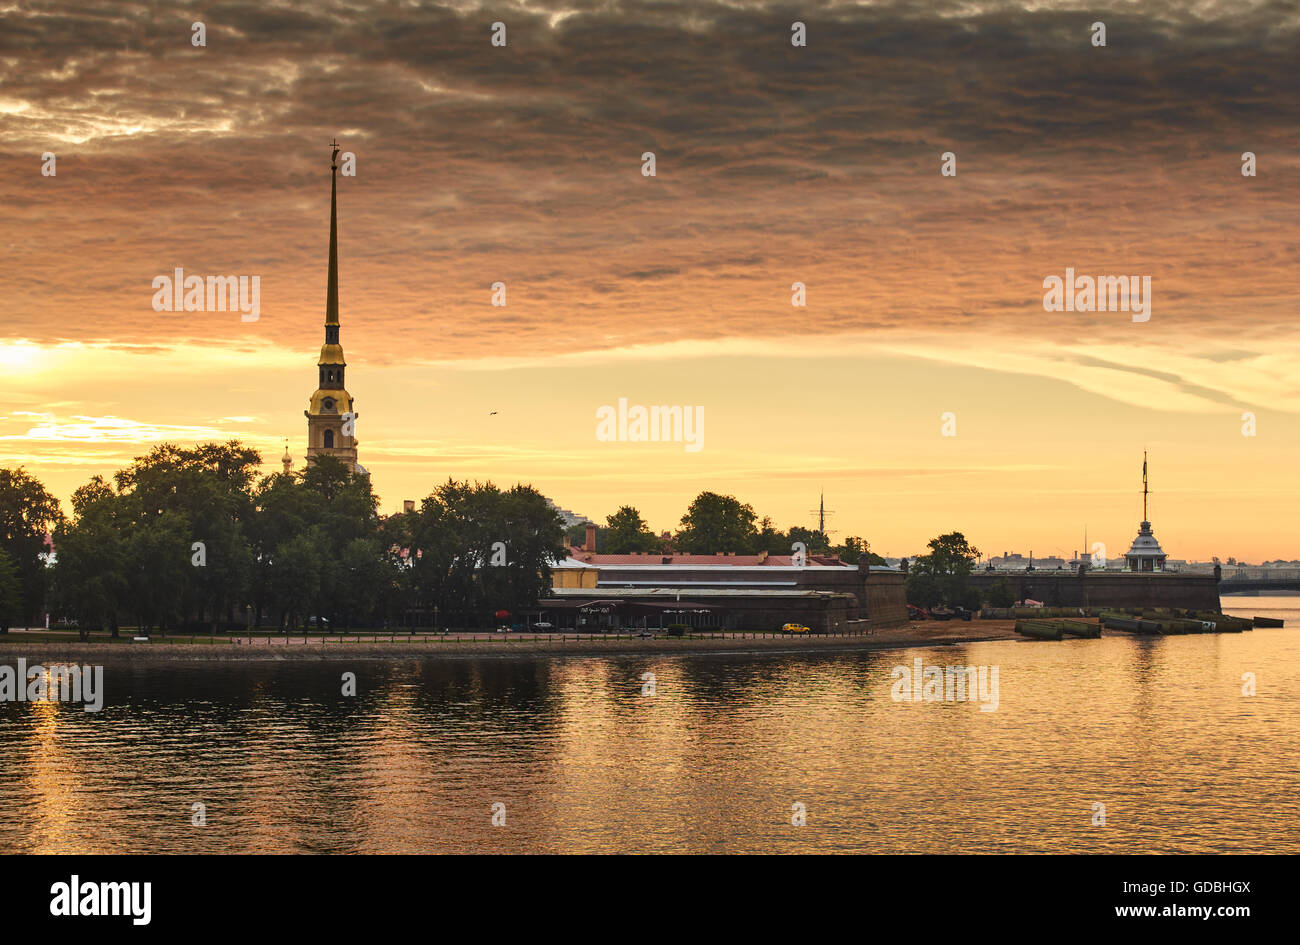 La Russie, Saint-Pétersbourg, 29 juin 2016 : la forteresse Pierre et Paul au lever du soleil, Spire avec ange dans le ciel orange, réflexions Banque D'Images